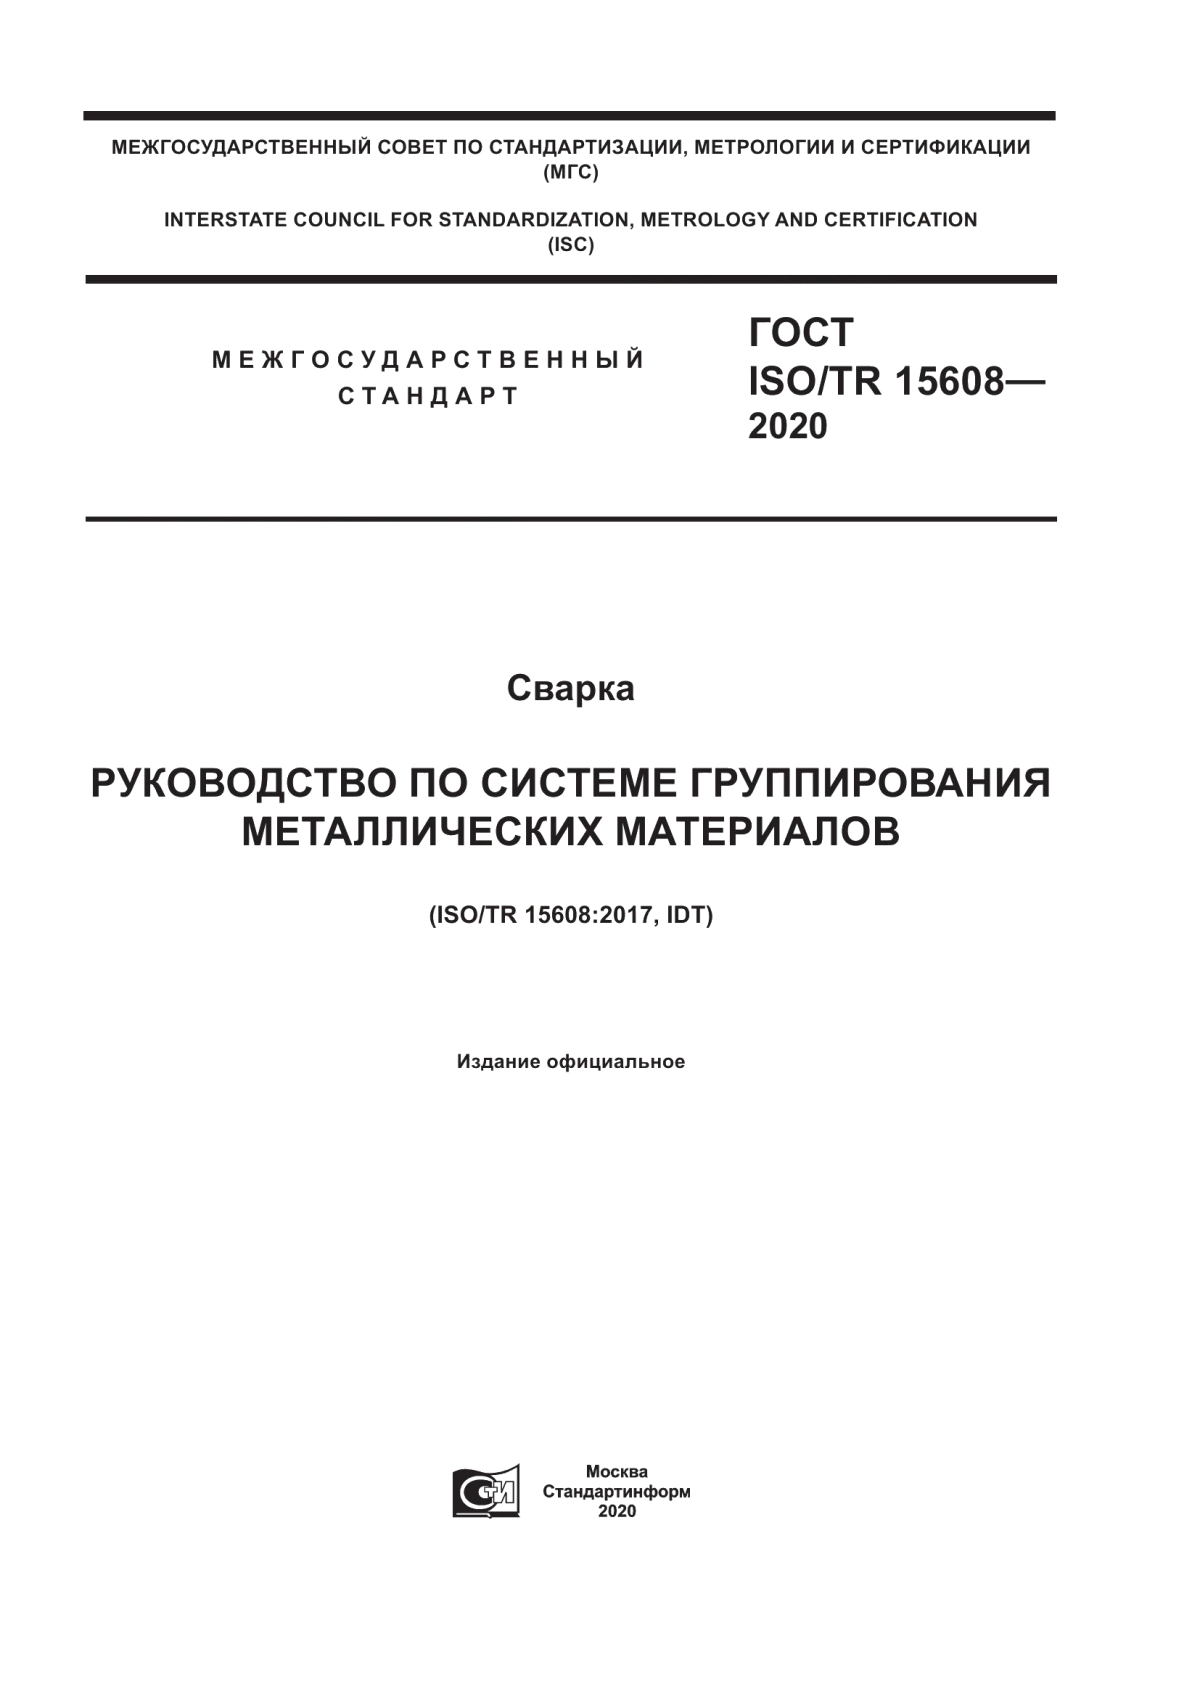 ГОСТ ISO/TR 15608-2020 Сварка. Руководство по системе группирования металлических материалов